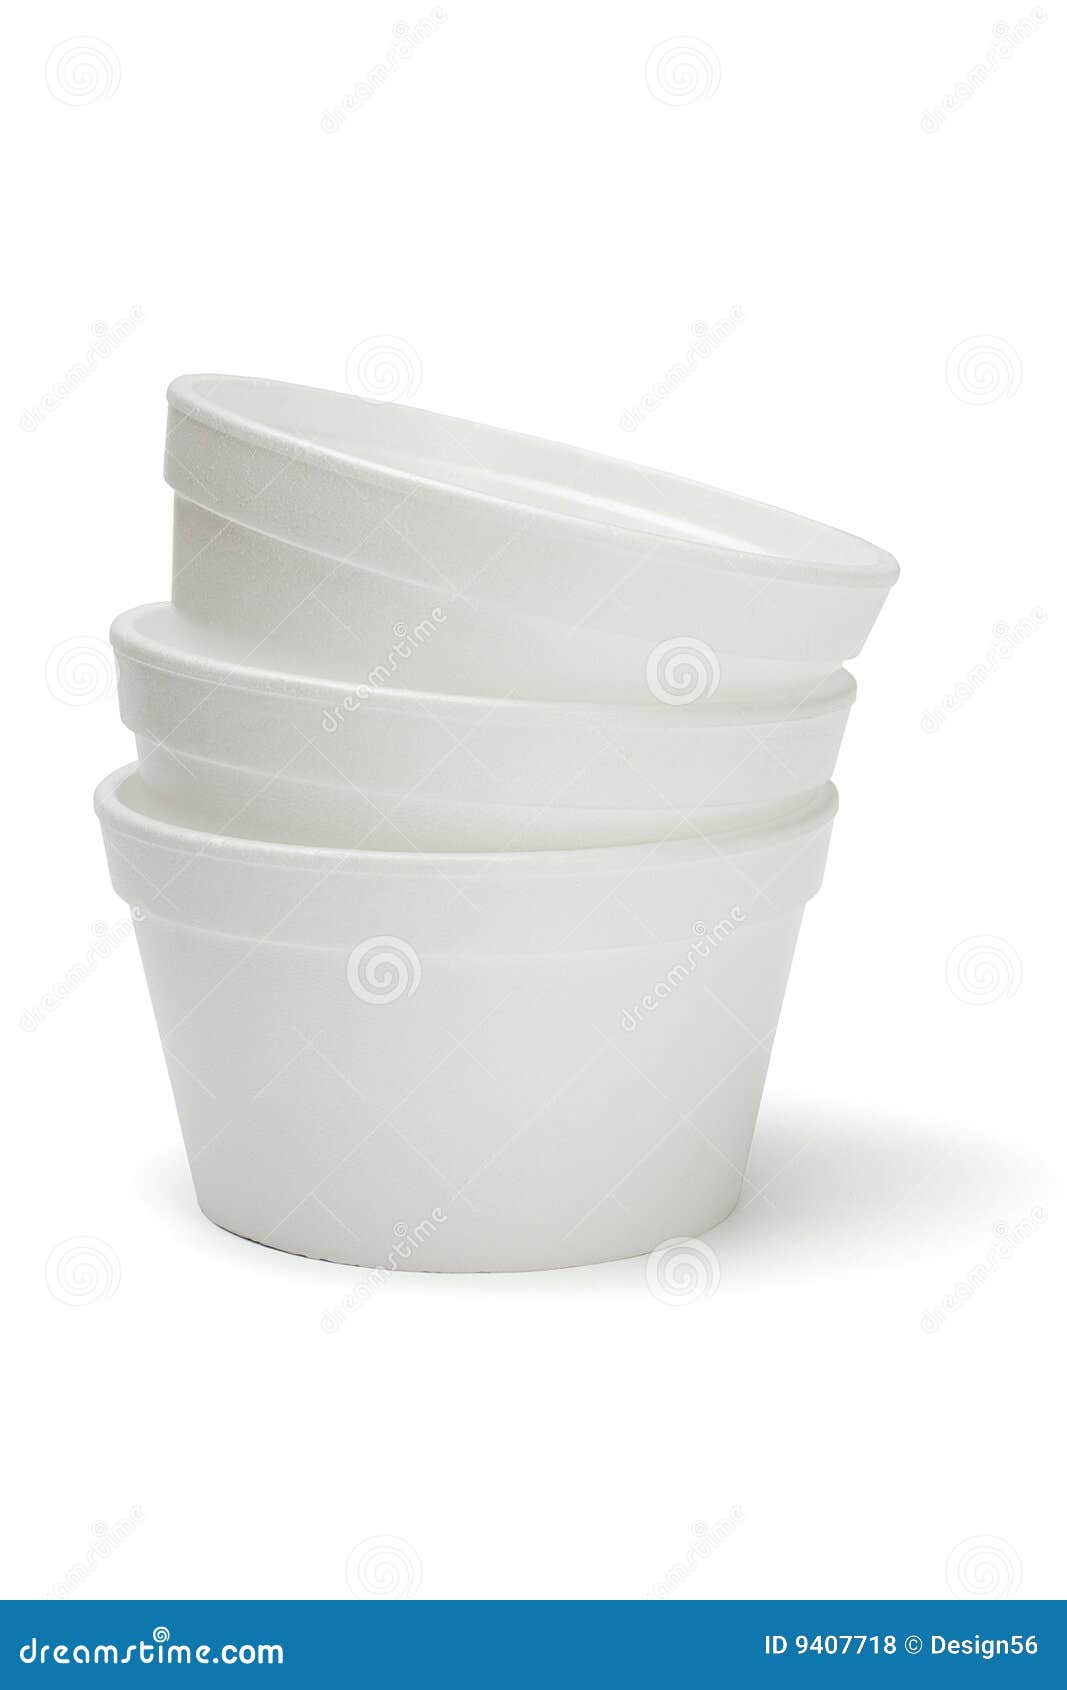 styrofoam bowls